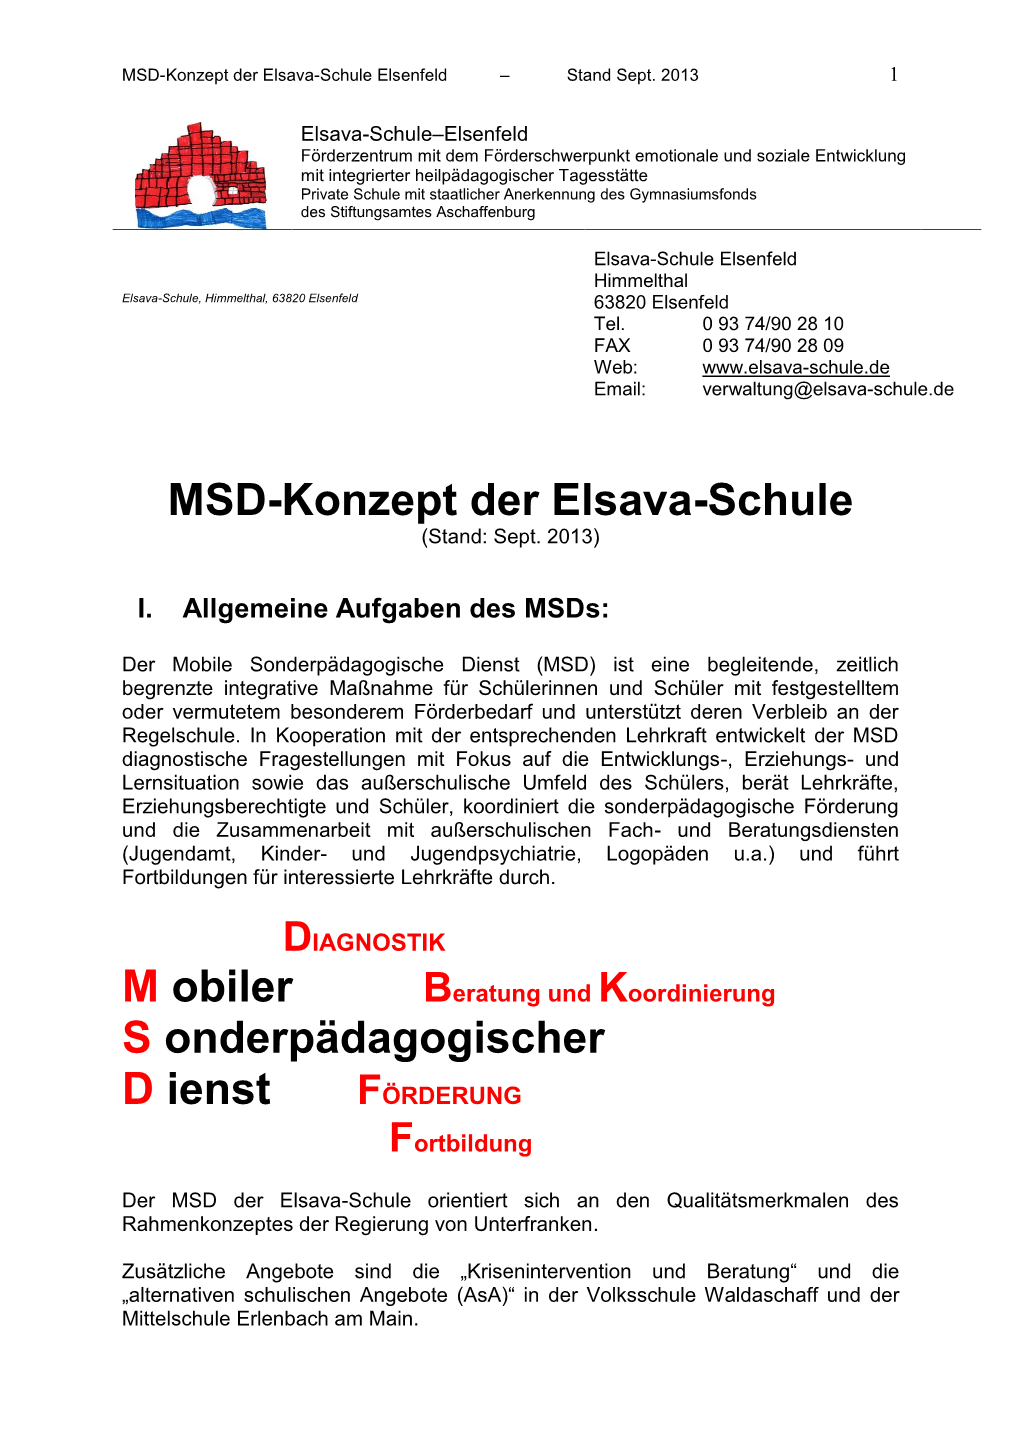 MSD-Konzept Der Elsava-Schule M Obiler S Onderpädagogischer D